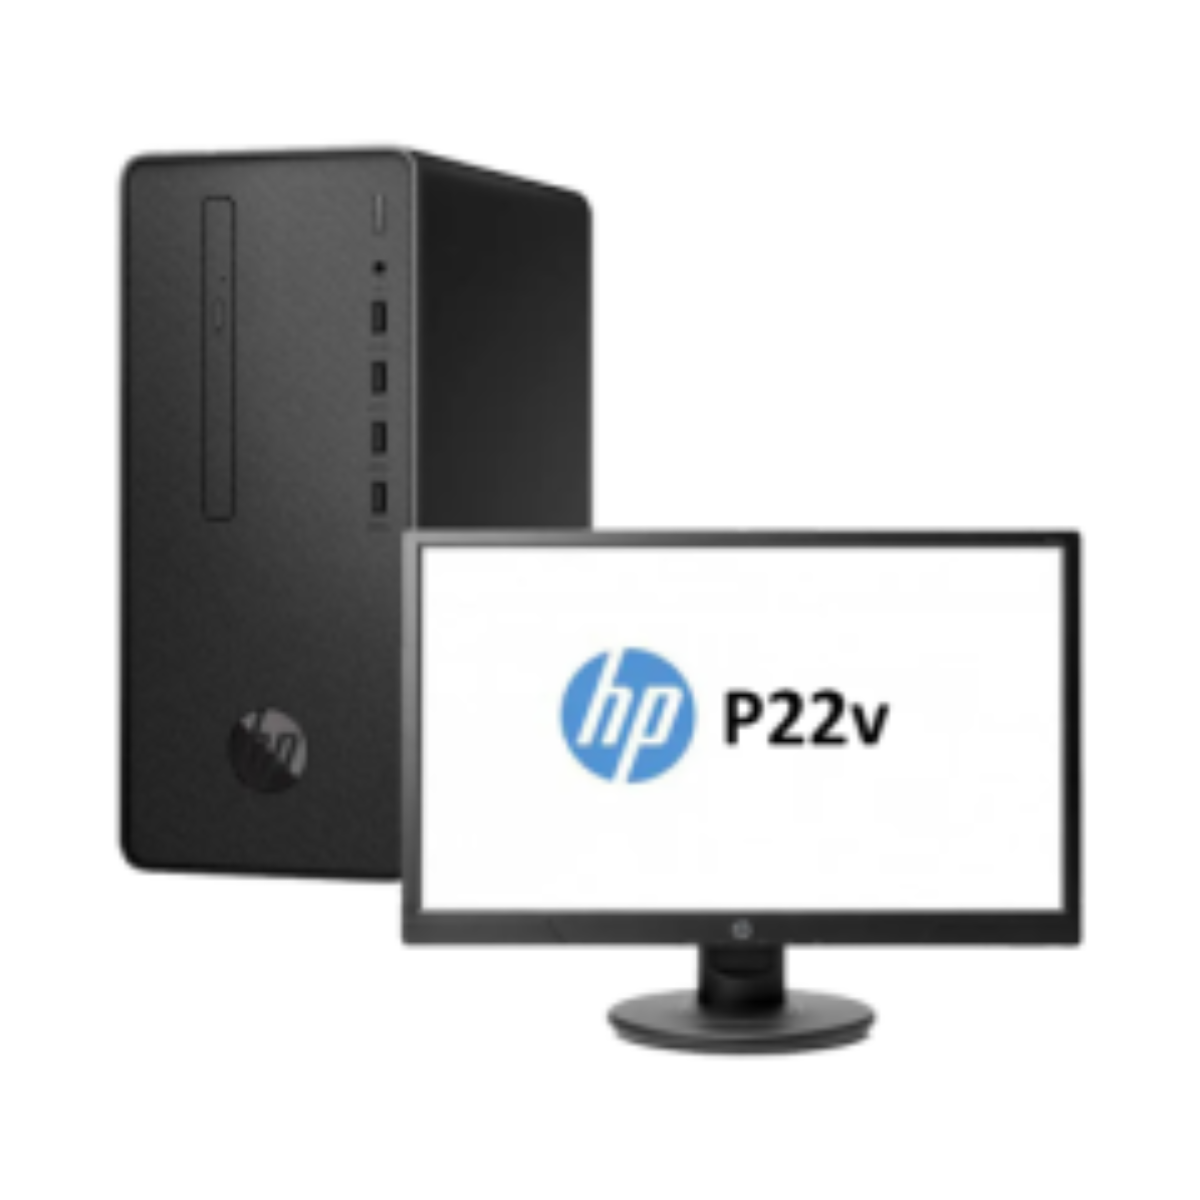 Ordinateur de bureau HP Pavilion 500-530nkm avec écran HP LED W2072a 20  pouces (L0W59EA) prix Maroc